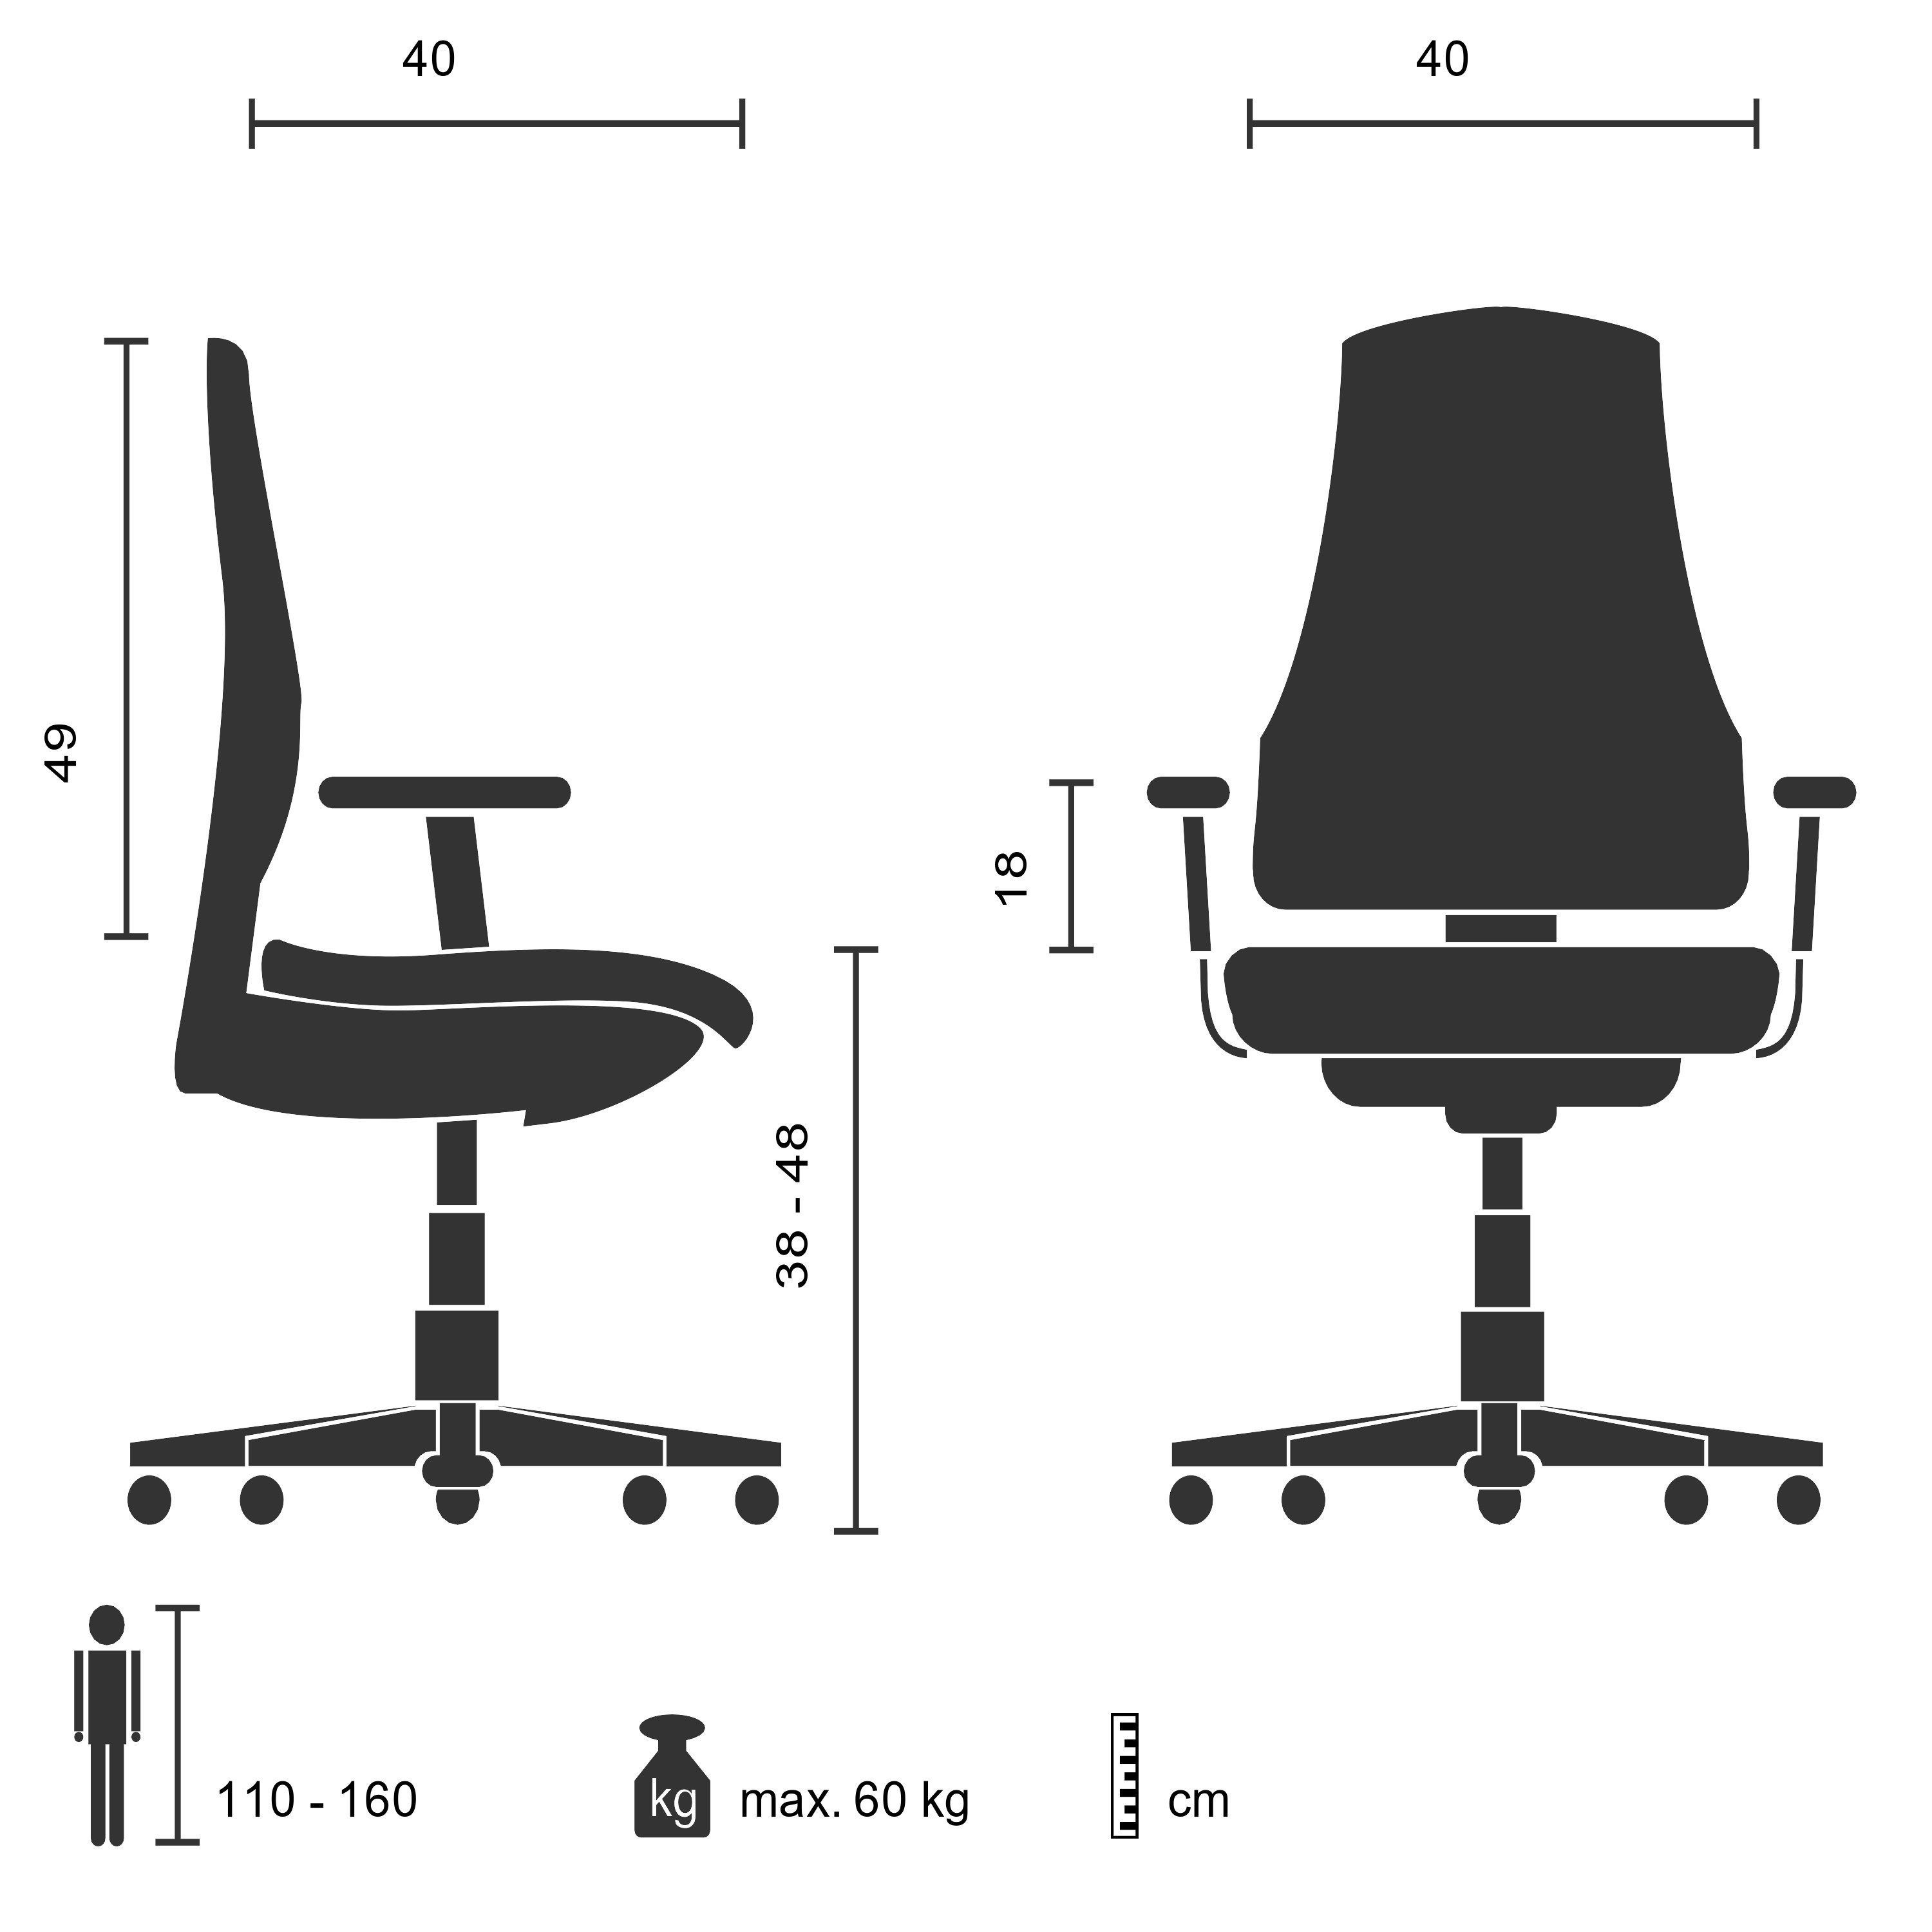 KIDDY ergonomisch (1 OFFICE Drehstuhl hjh Schwarz/Orange Kinderdrehstuhl mitwachsend, St), PRO mit Armlehnen Stoff AL